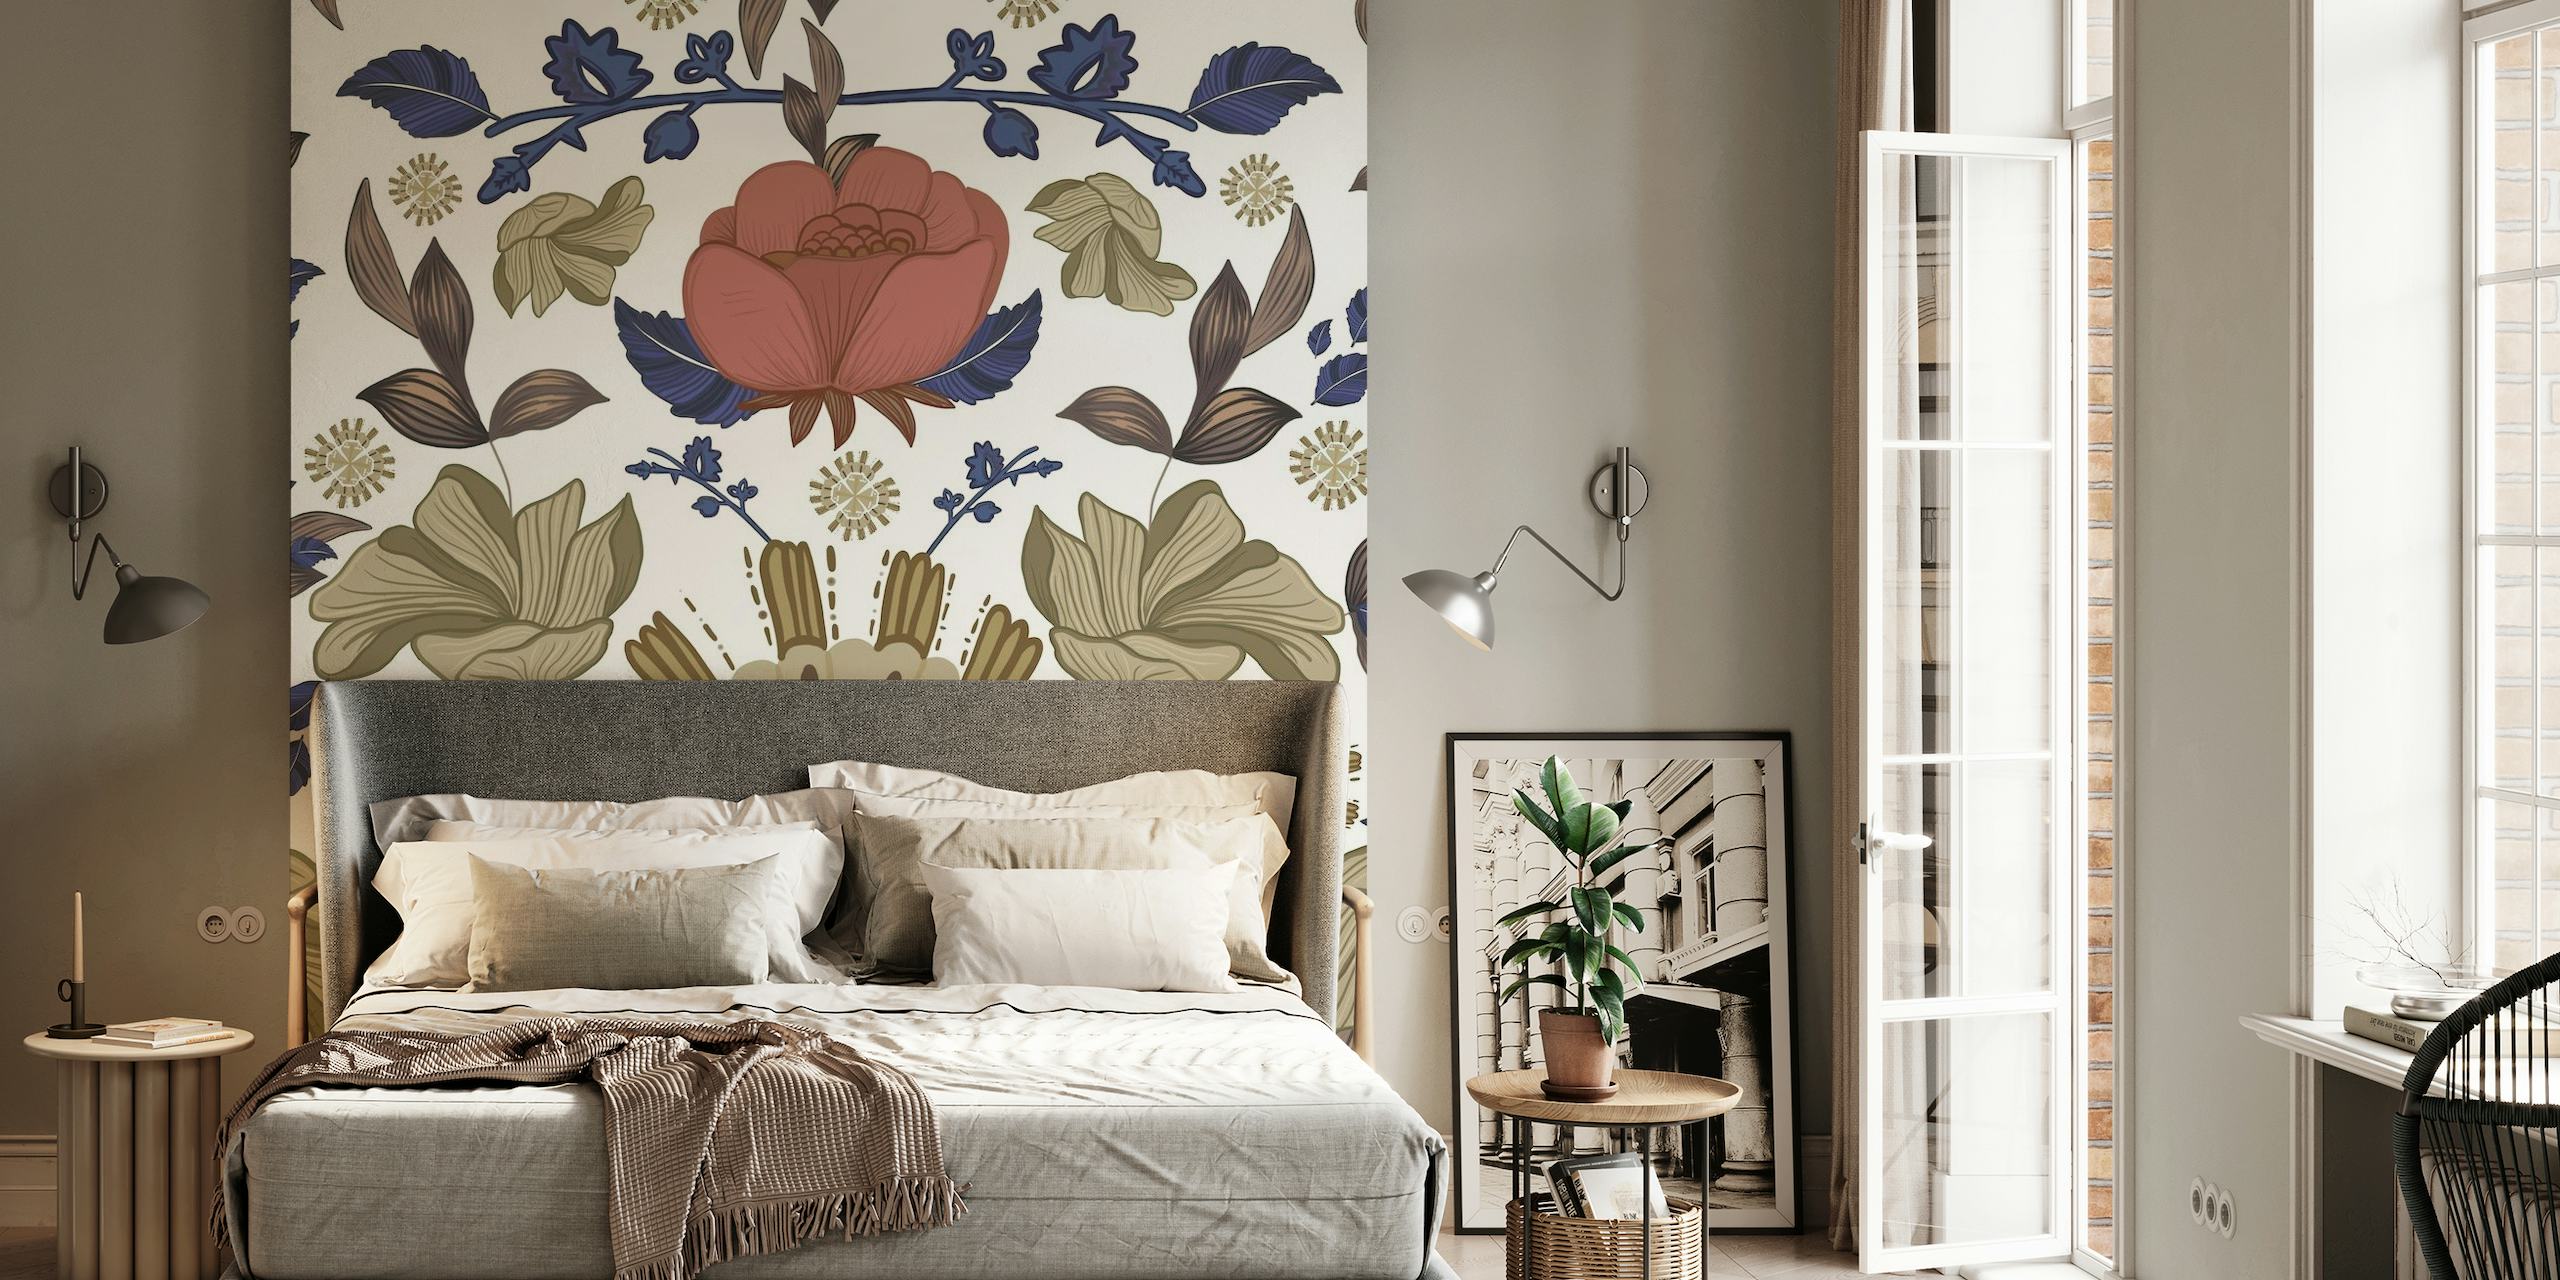 Romantisches florales Barockmuster-Wandbild im Regency-Stil mit Rosen und Vintage-Elementen.